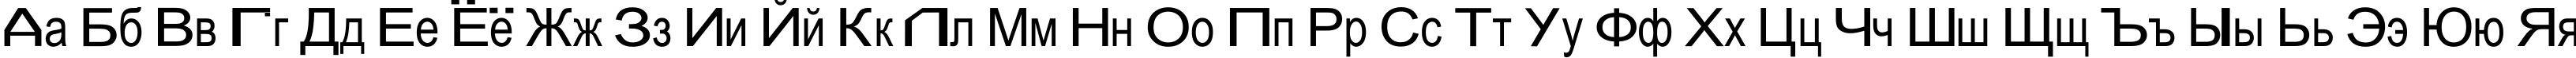 Пример написания русского алфавита шрифтом Julia Special Font W